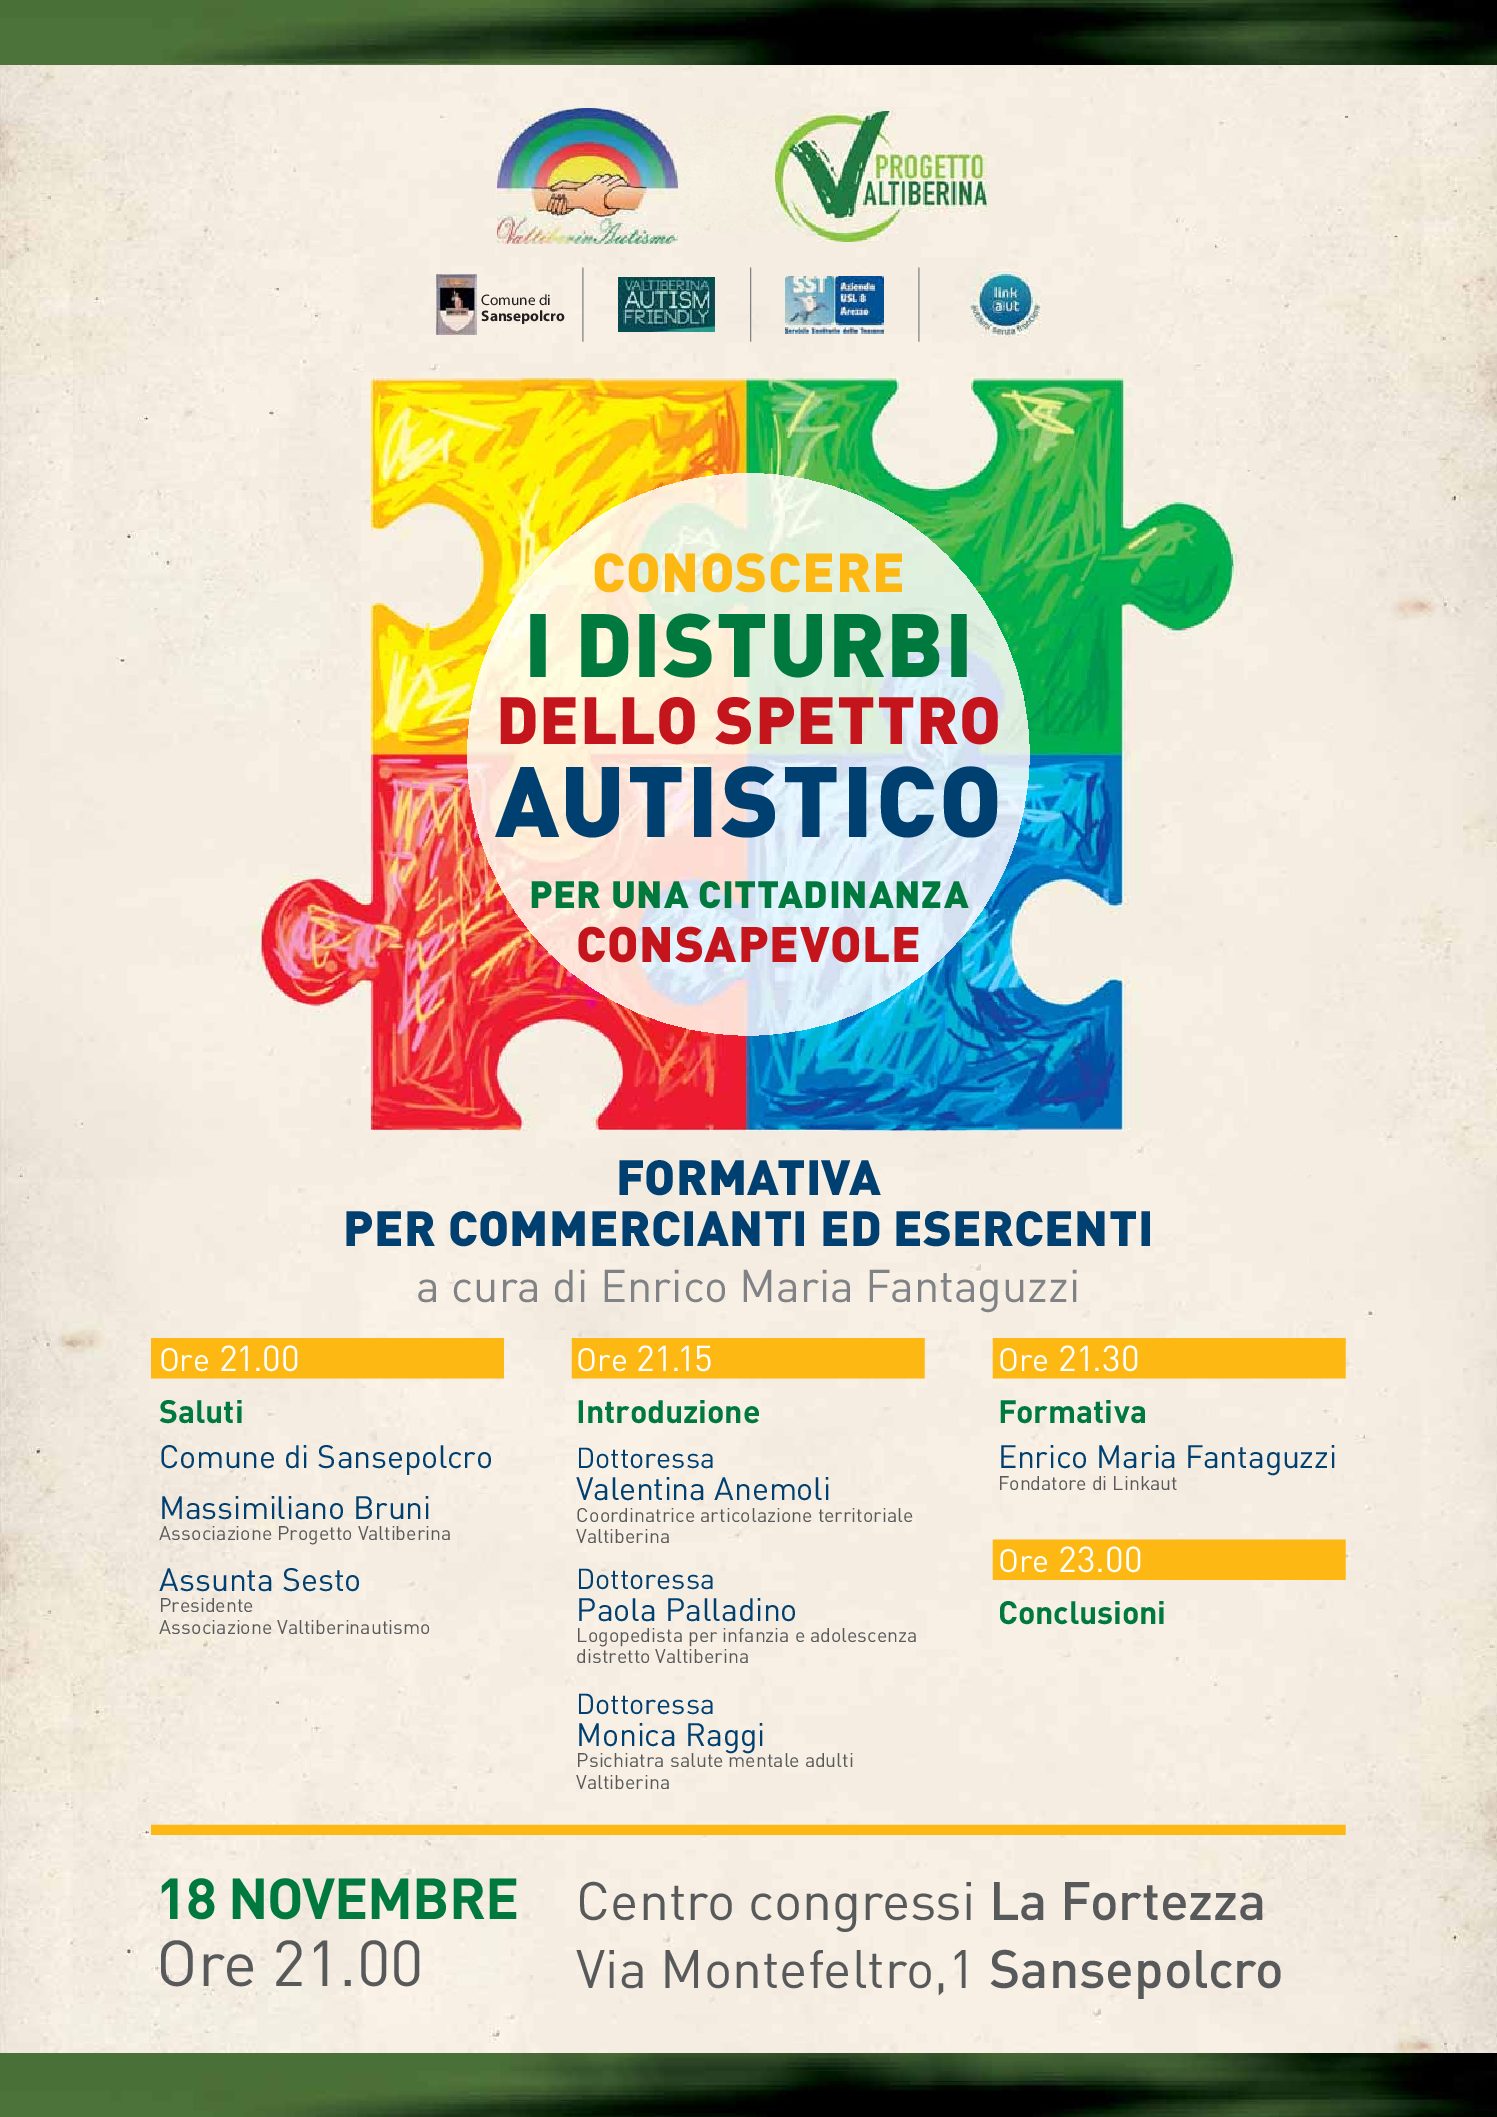 Sansepolcro: “Conoscere i disturbi dello spettro autistico per una cittadinanza consapevole”